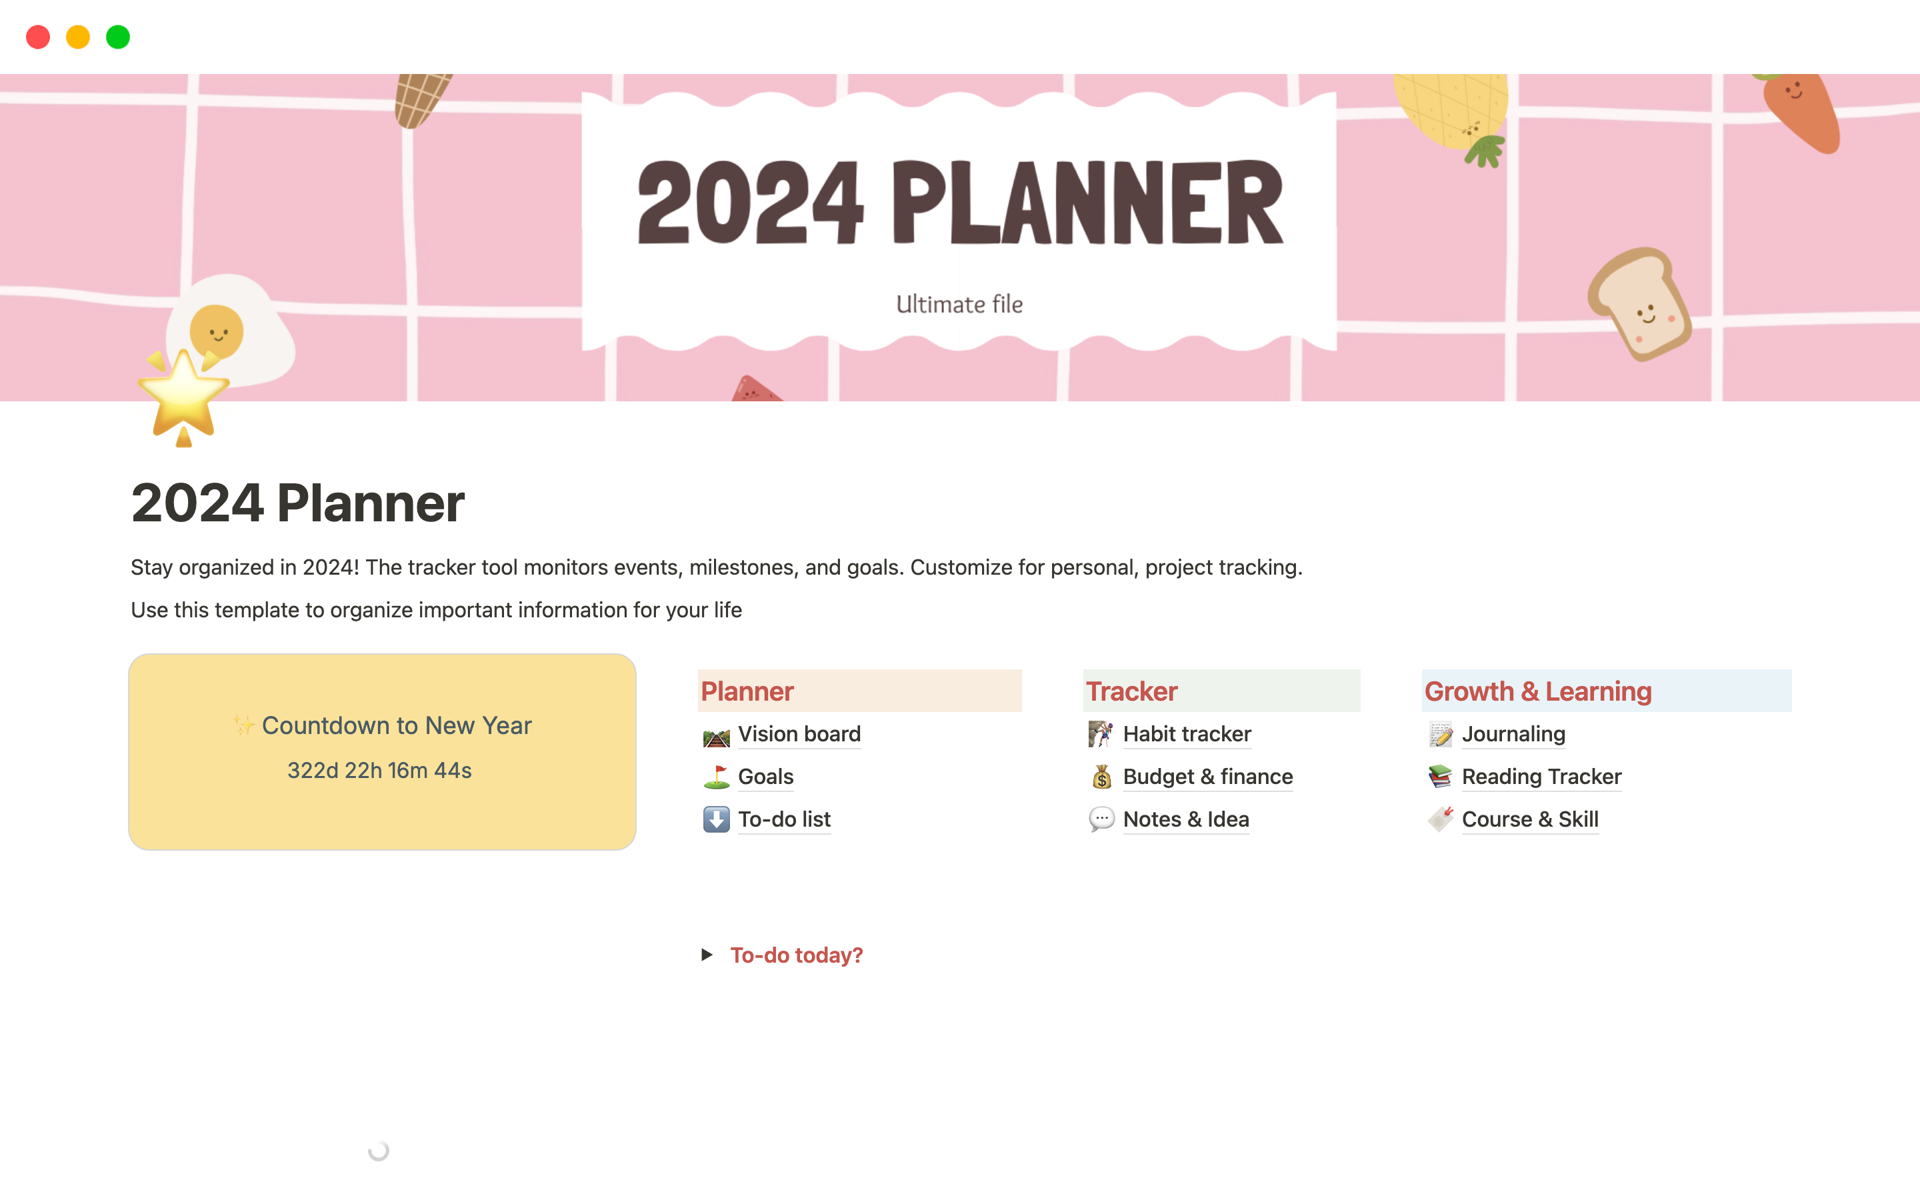 Vista previa de una plantilla para 2024 Planner